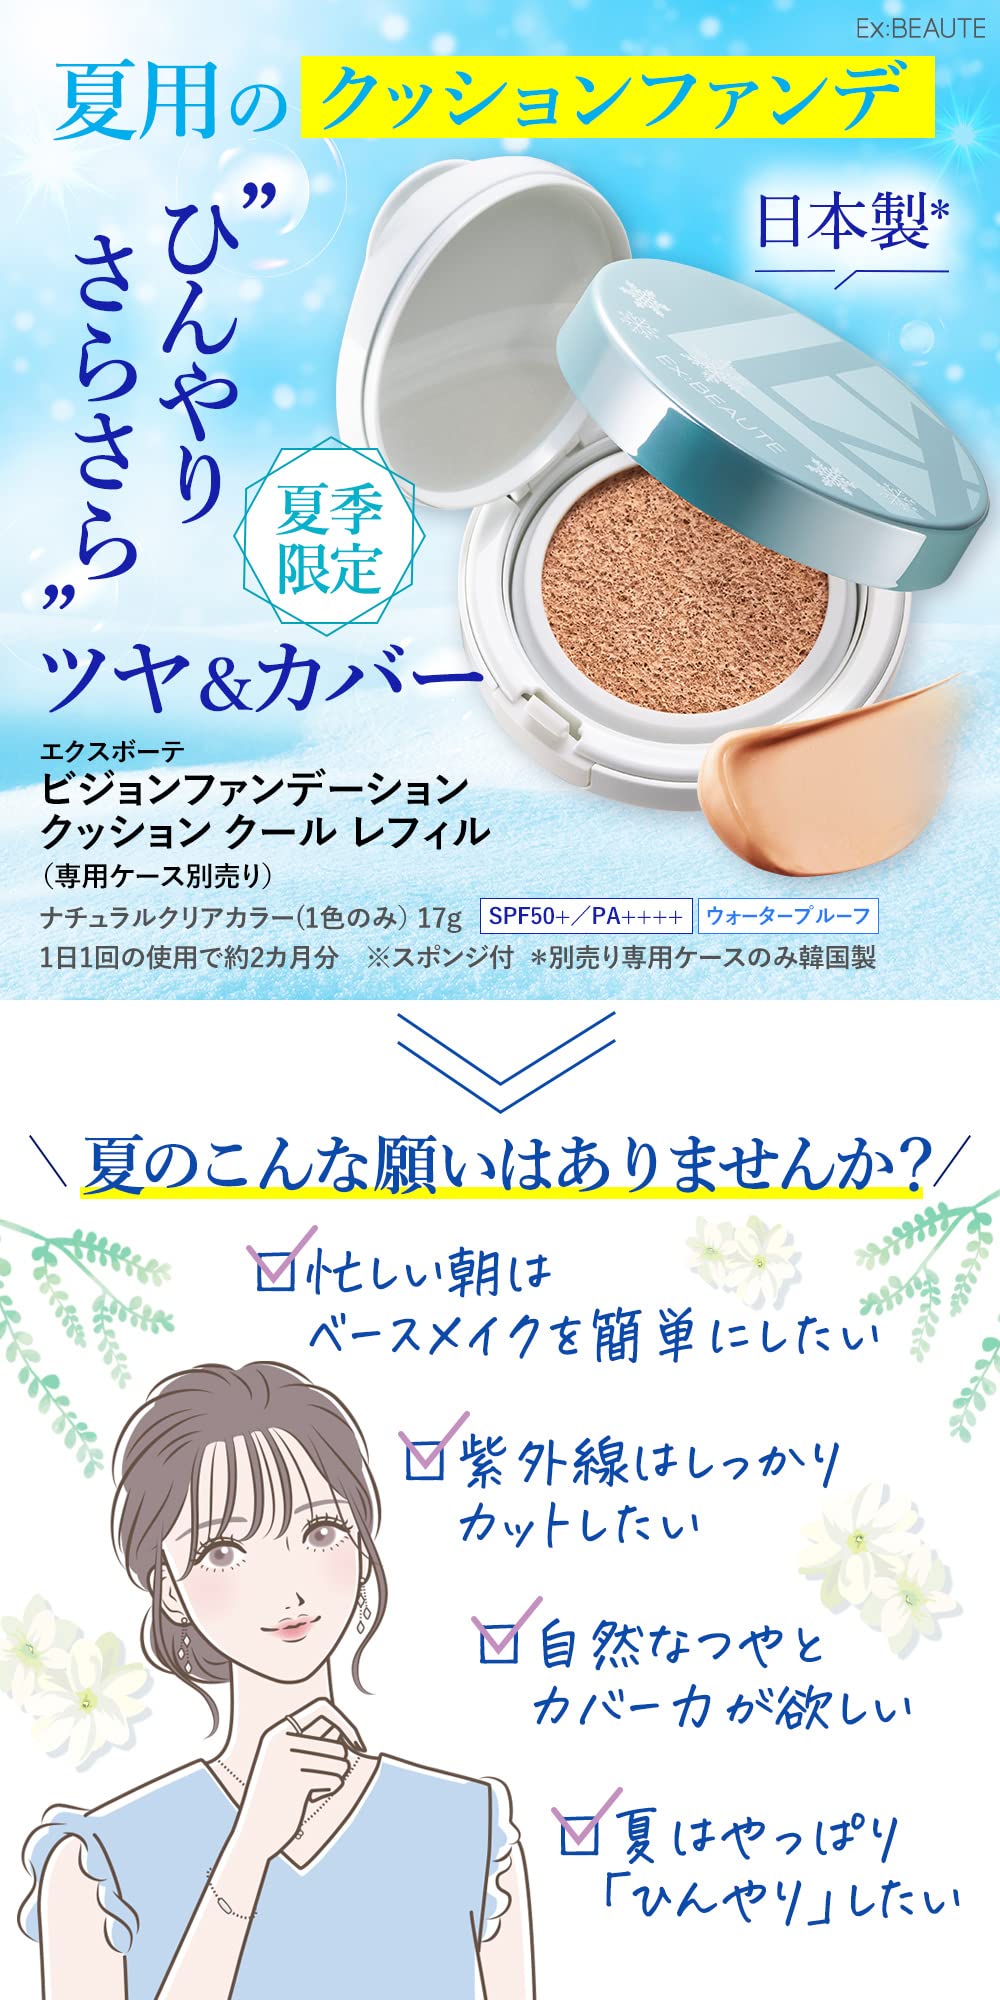 Shiseido Japan Freshy Dry Shampoo Spray Set 8X150Ml